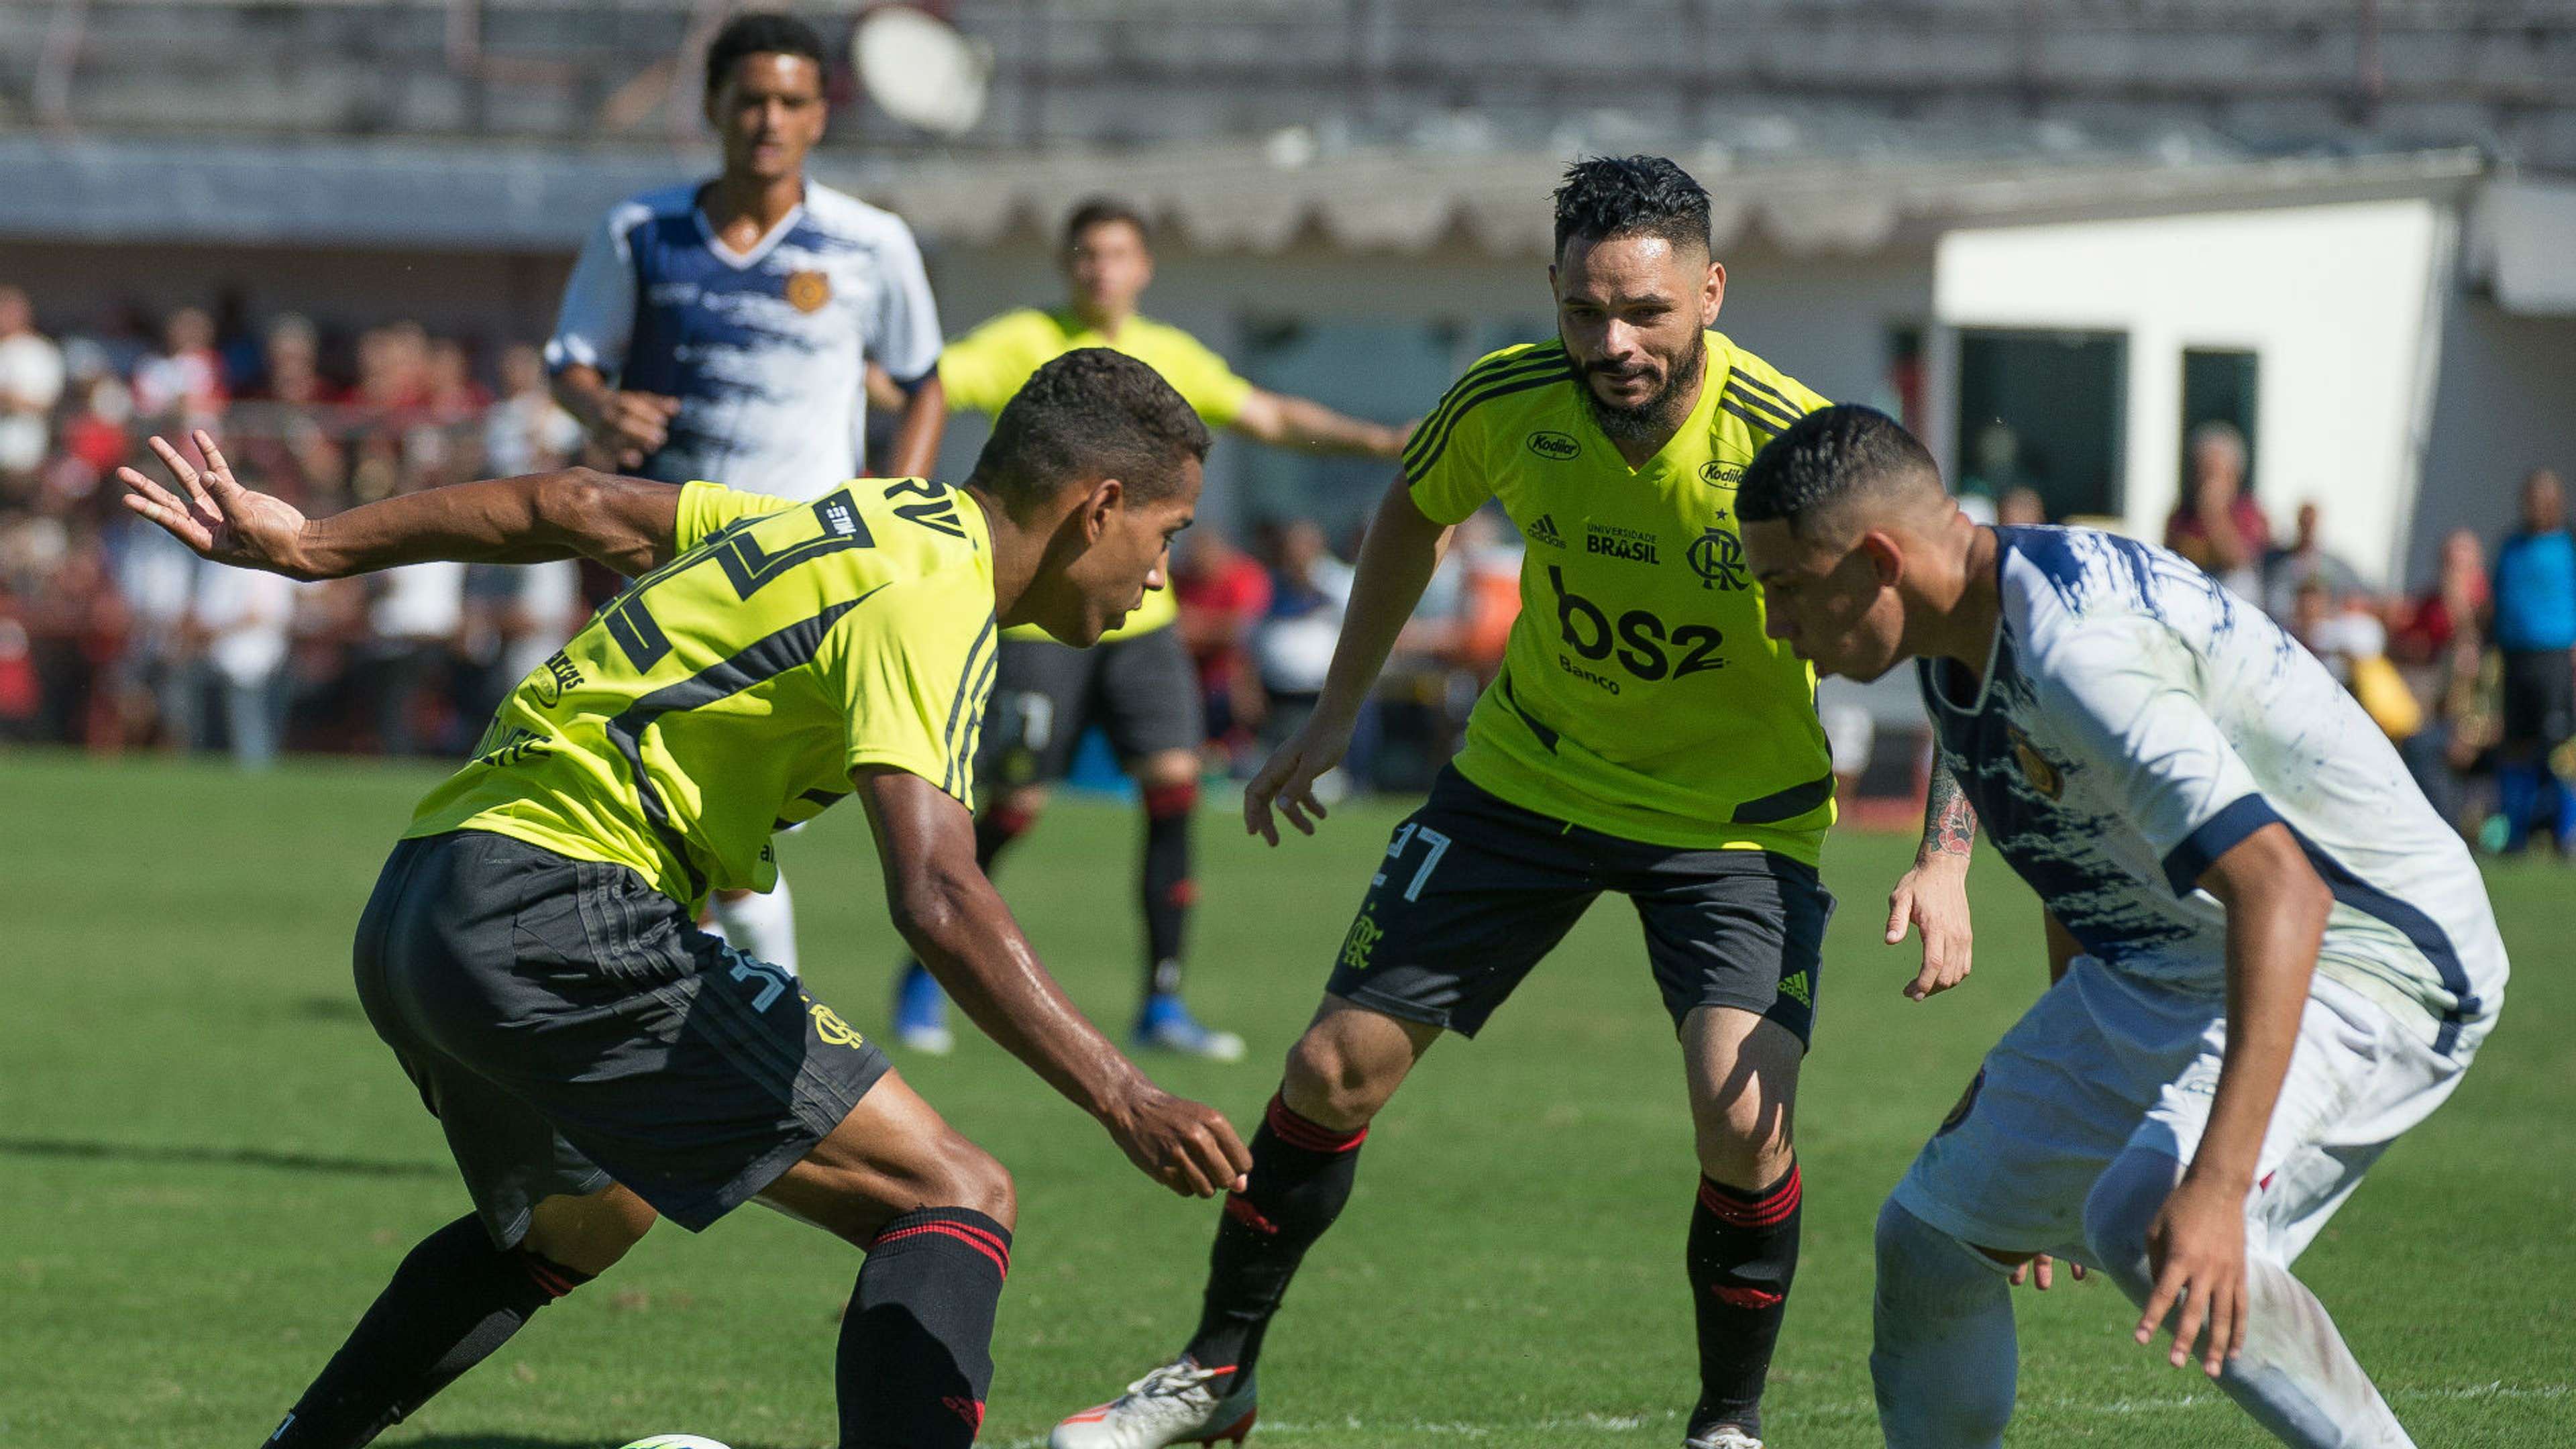 Pará Flamengo Madureira treino 29 06 2019